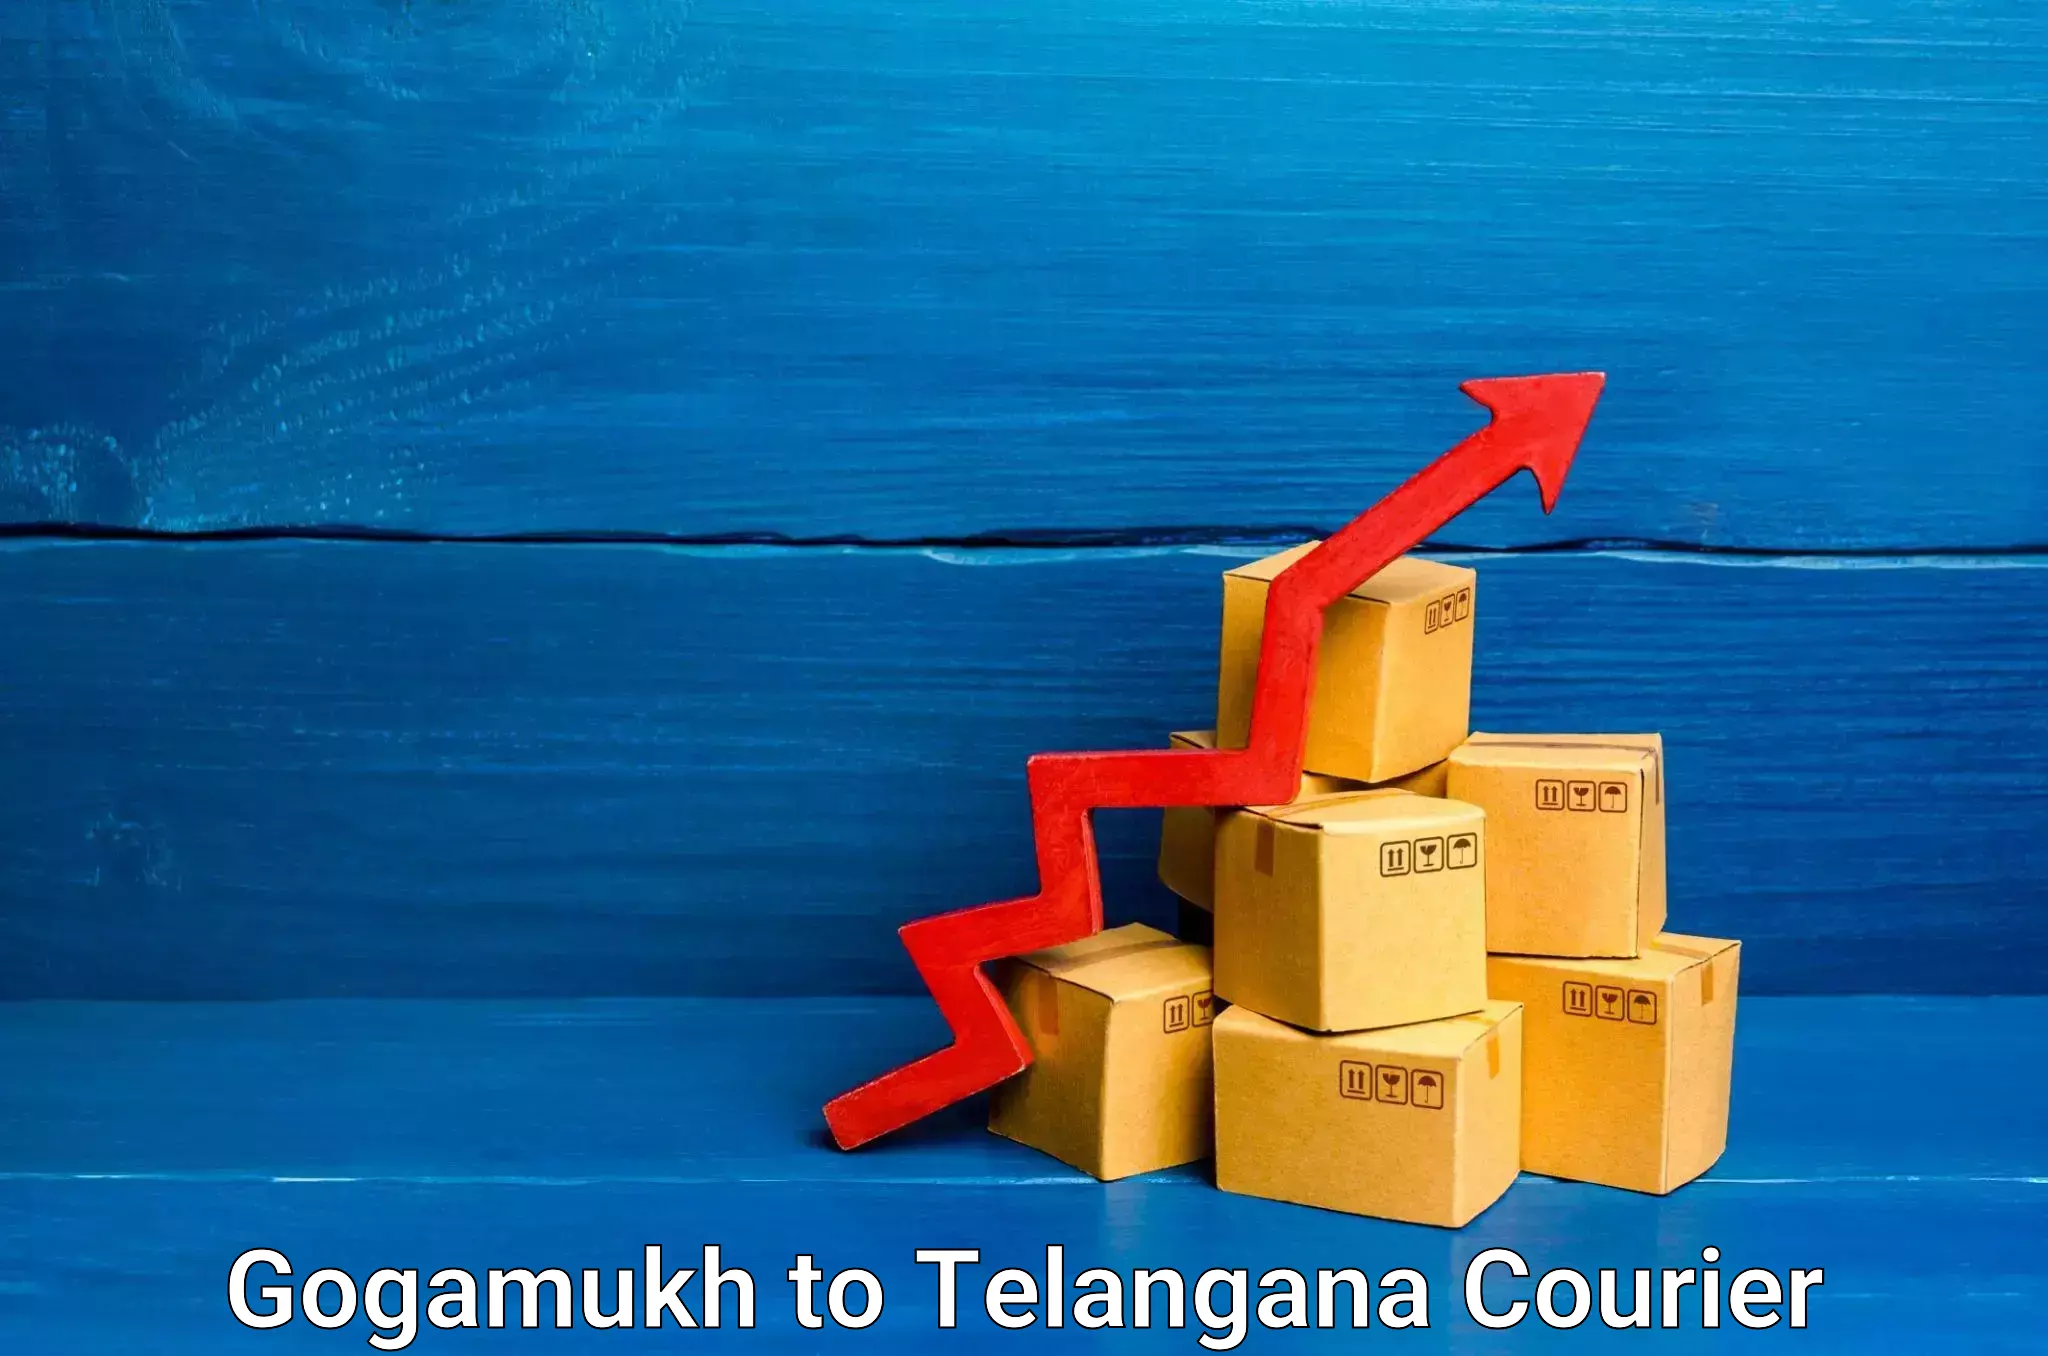 On-demand shipping options Gogamukh to Hyderabad